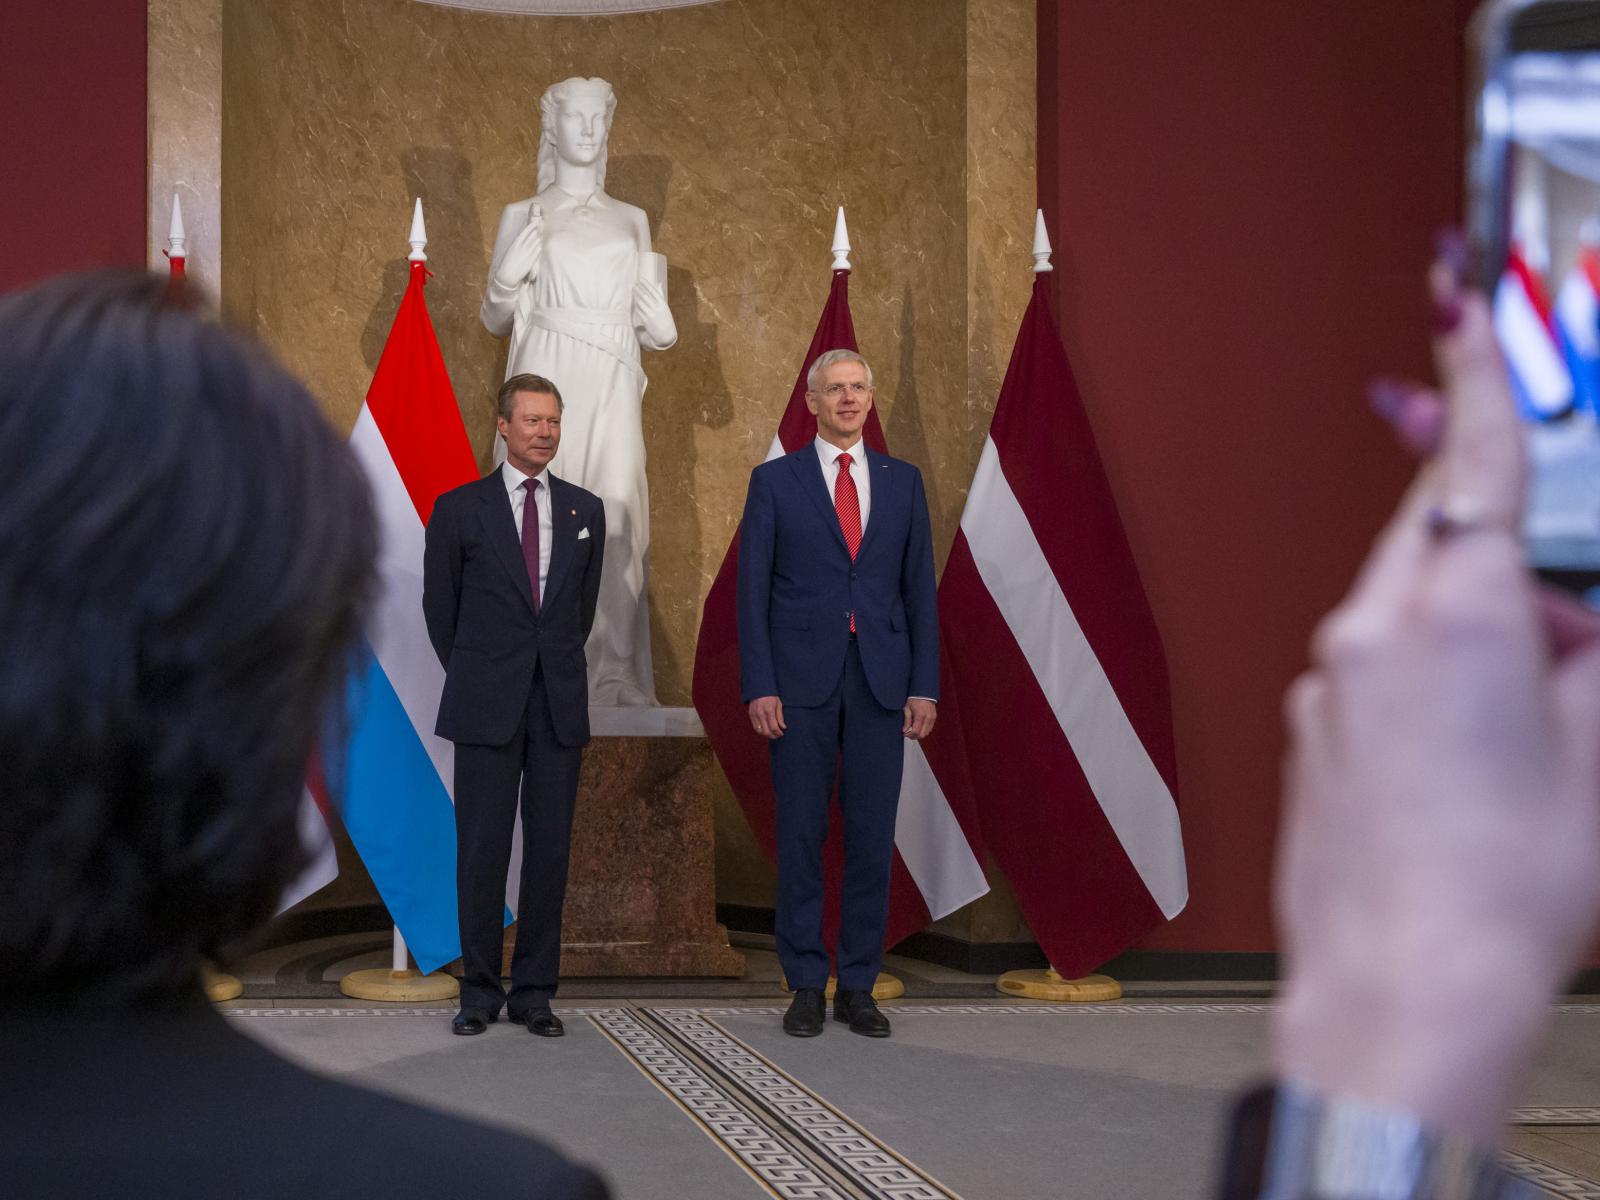 Le Grand-Duc et le Premier ministre lors de la photo officielle